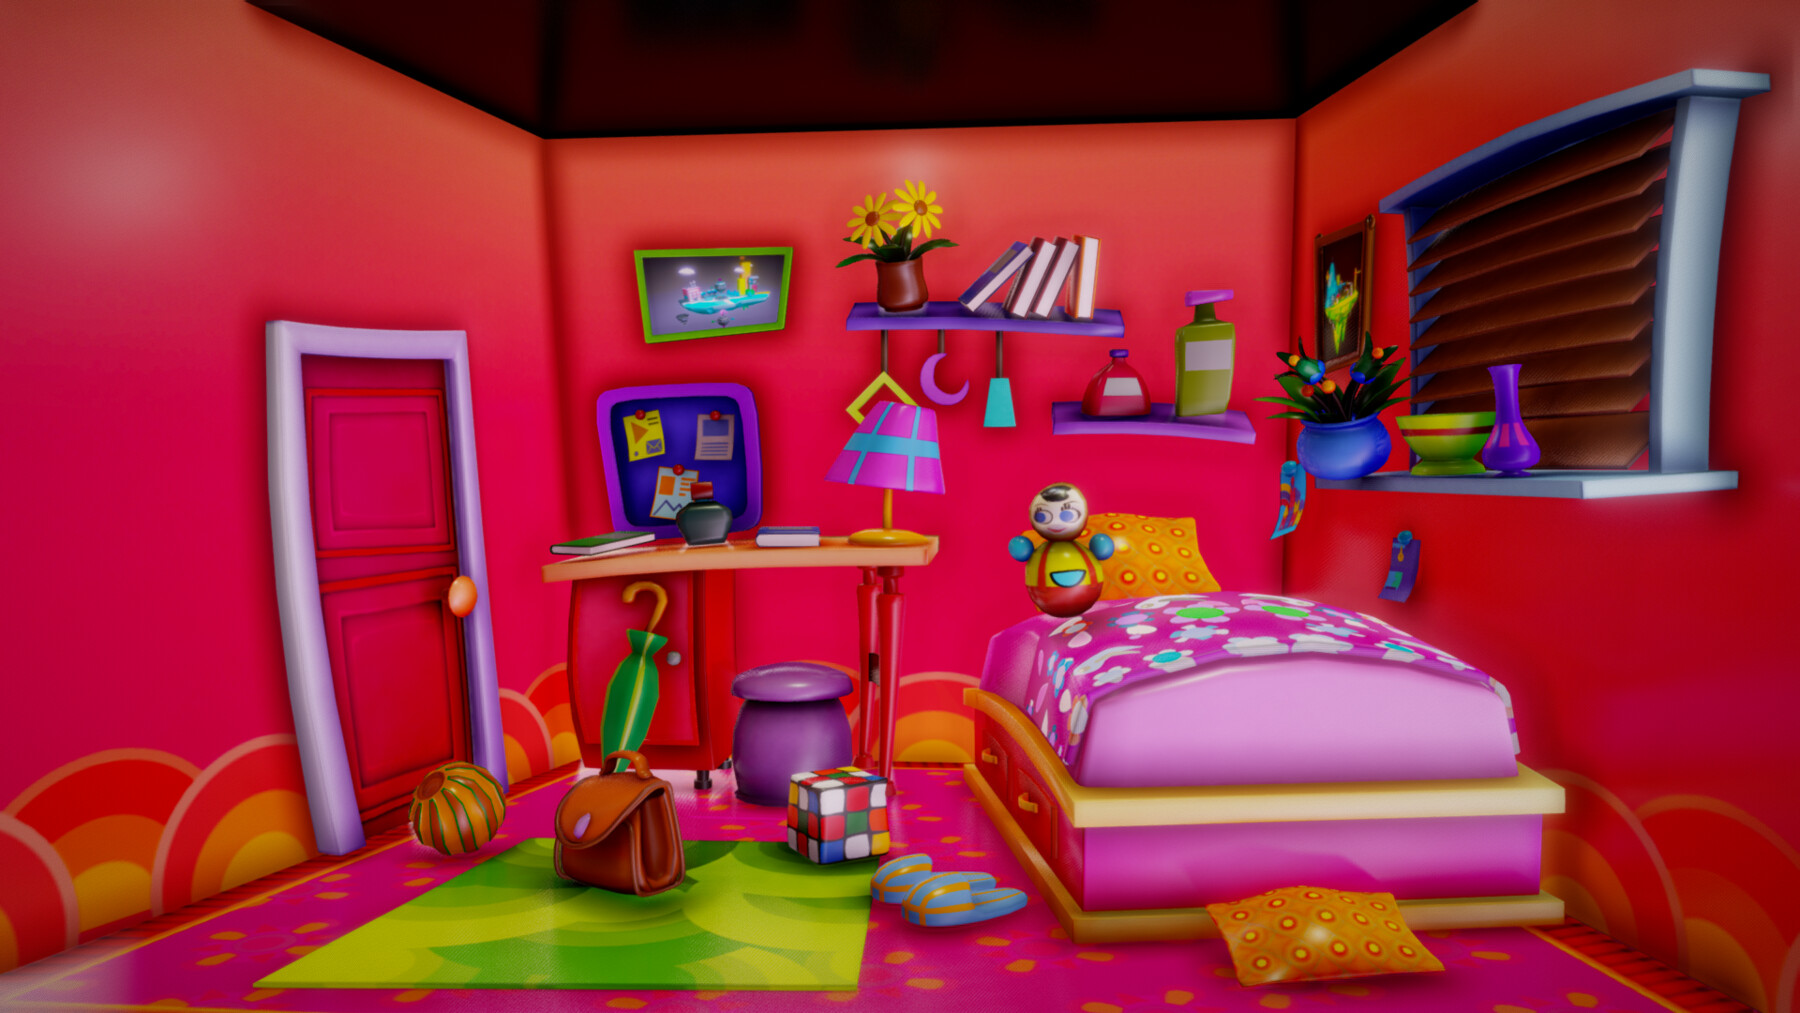 ArtStation - Cartoon furniture bed room Girl | Game Assets